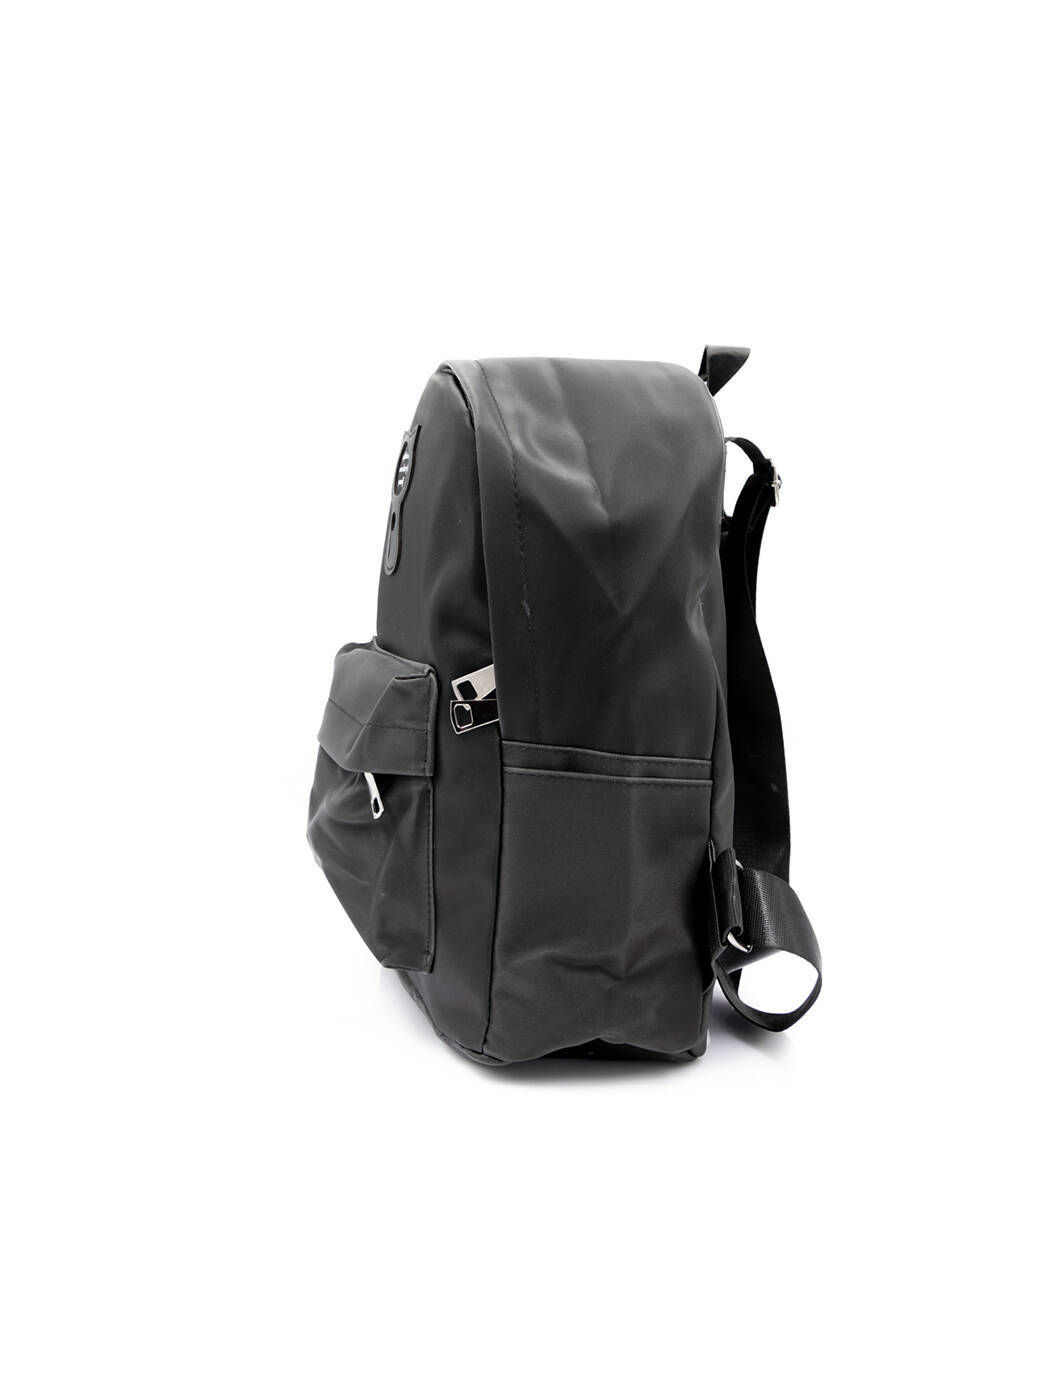 Рюкзак спортивный черный 305-4-black_M вид 0